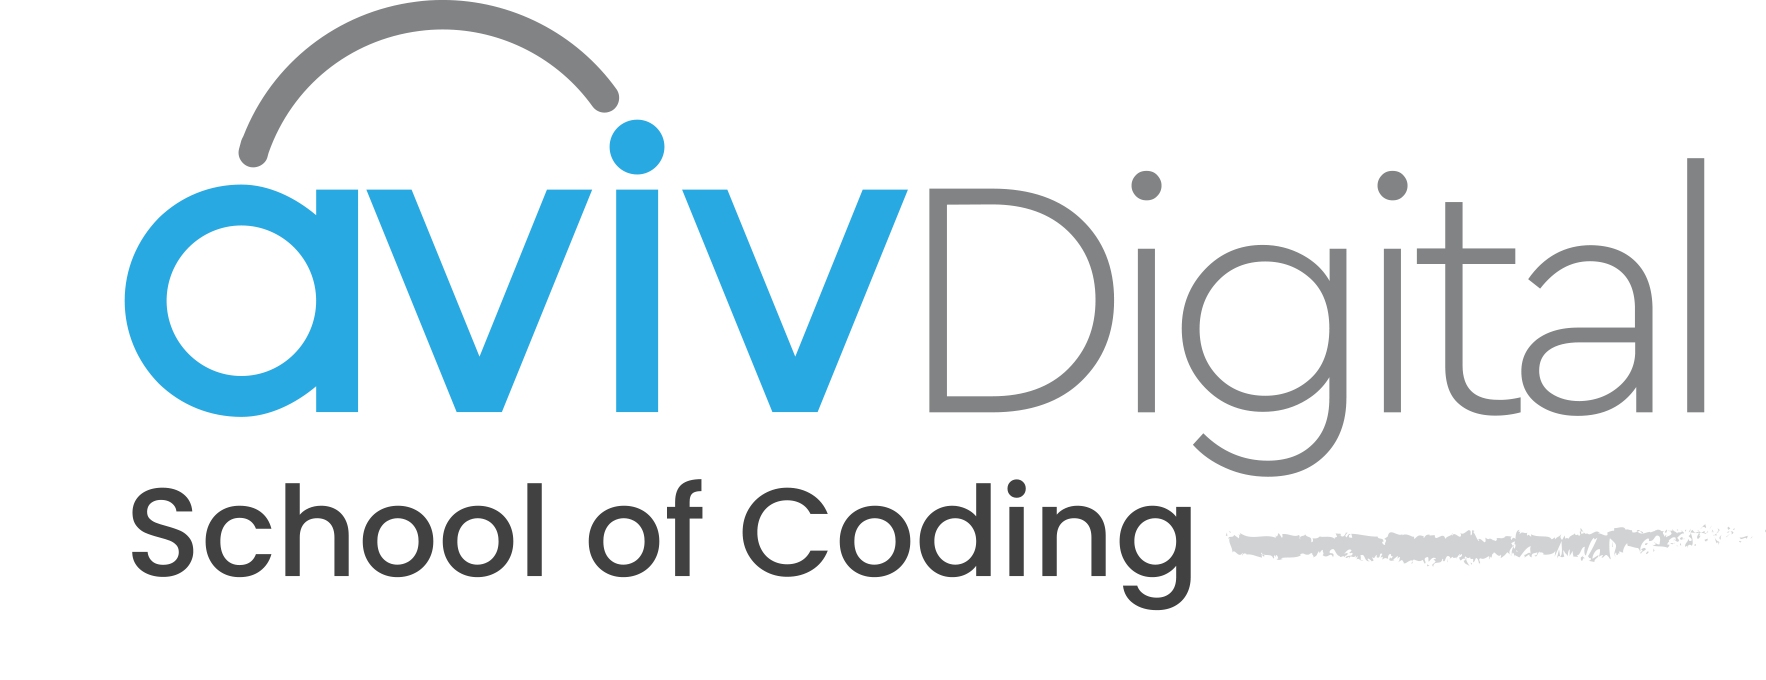 AvivDigital – School of Coding